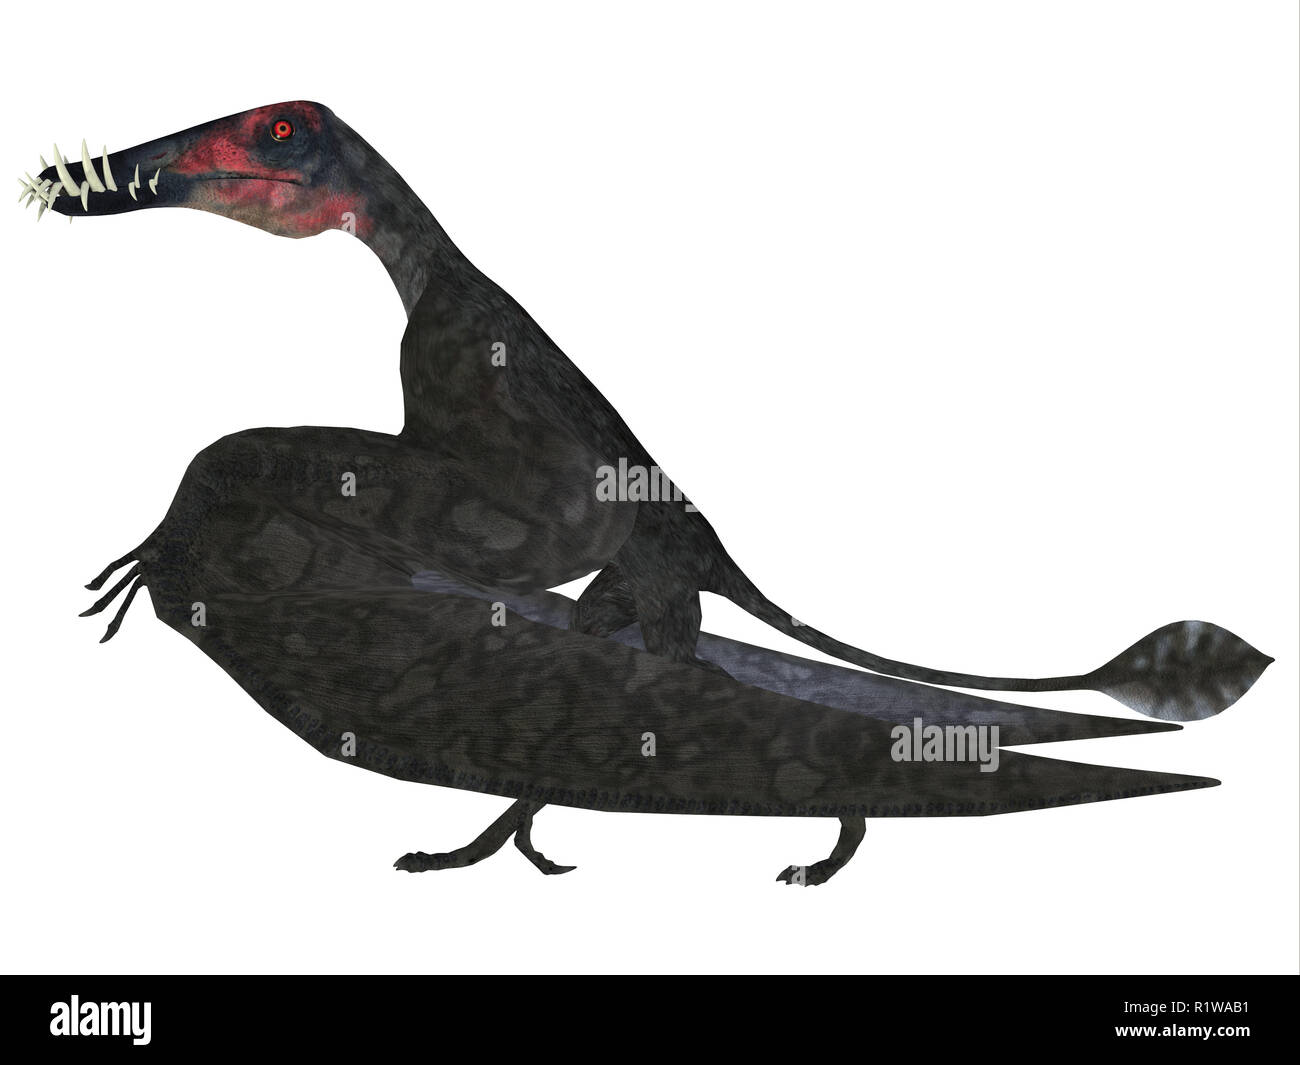 Dorygnathus était un ptérosaure carnivores que reptiles vivaient en Europe pendant la période jurassique. Banque D'Images